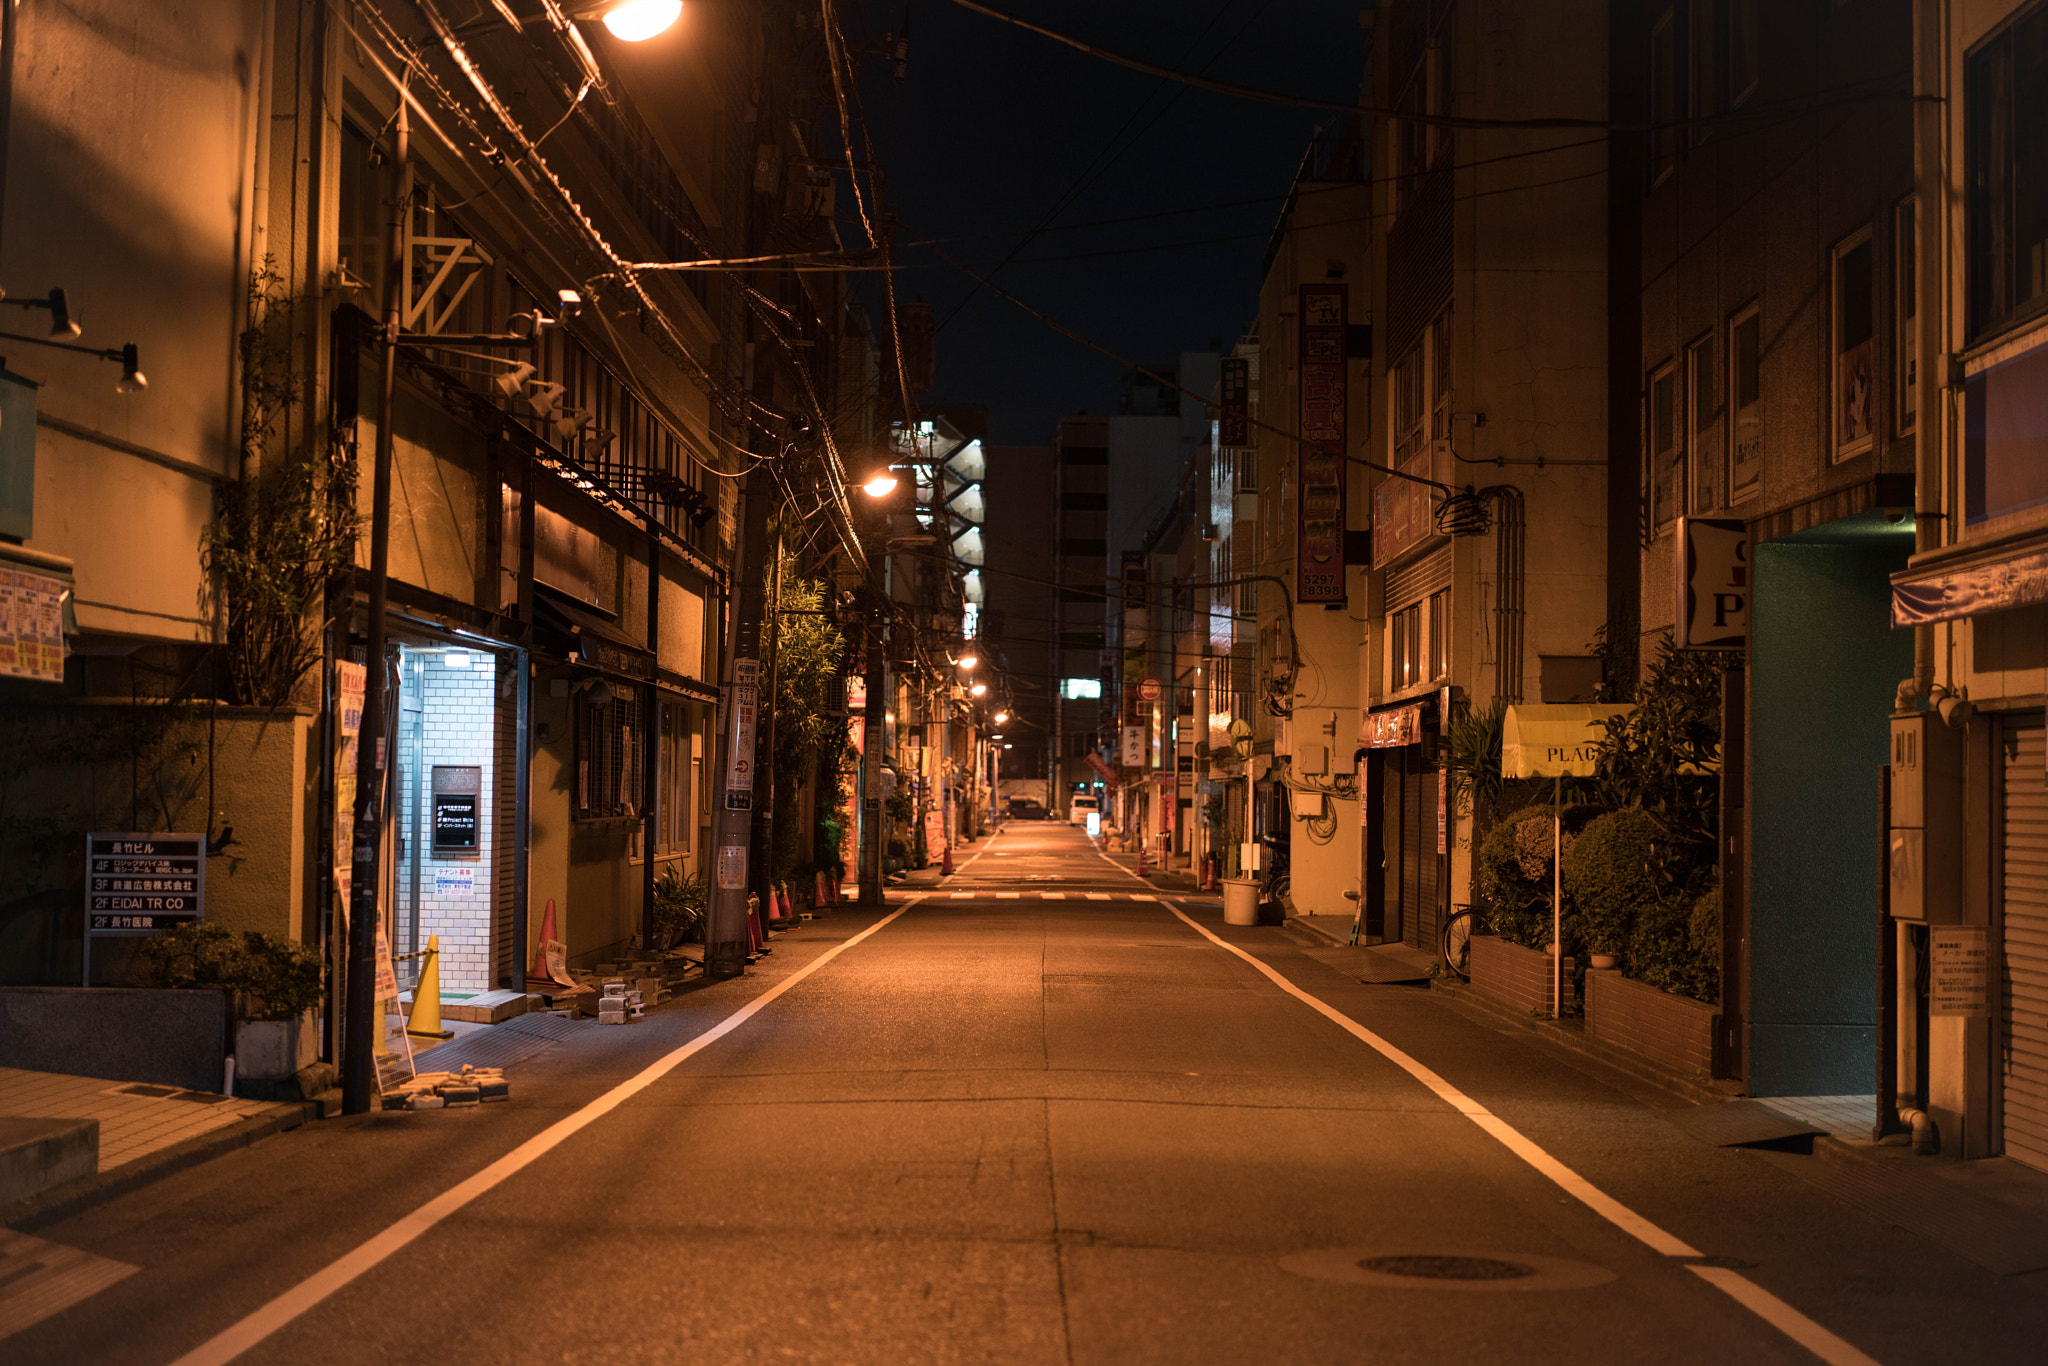 ZEISS Otus 55mm F1.4 sample photo. Akihabara midnight photography